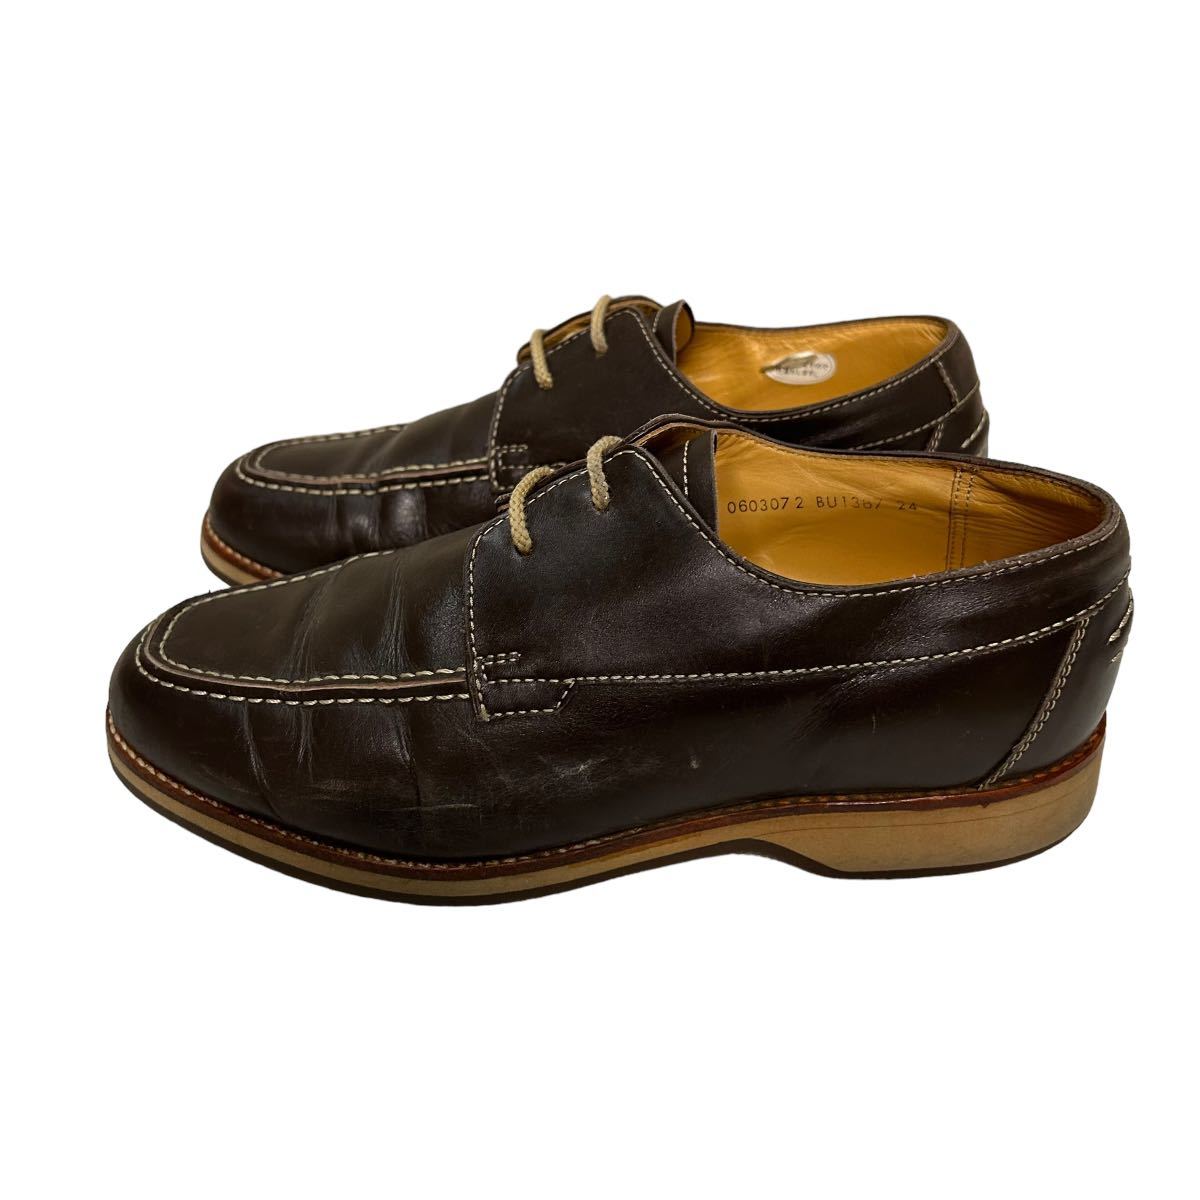 BB887 BURBERRY  Burberry    мужской   ходьба   обувь   24cm  коричневый   кожа 